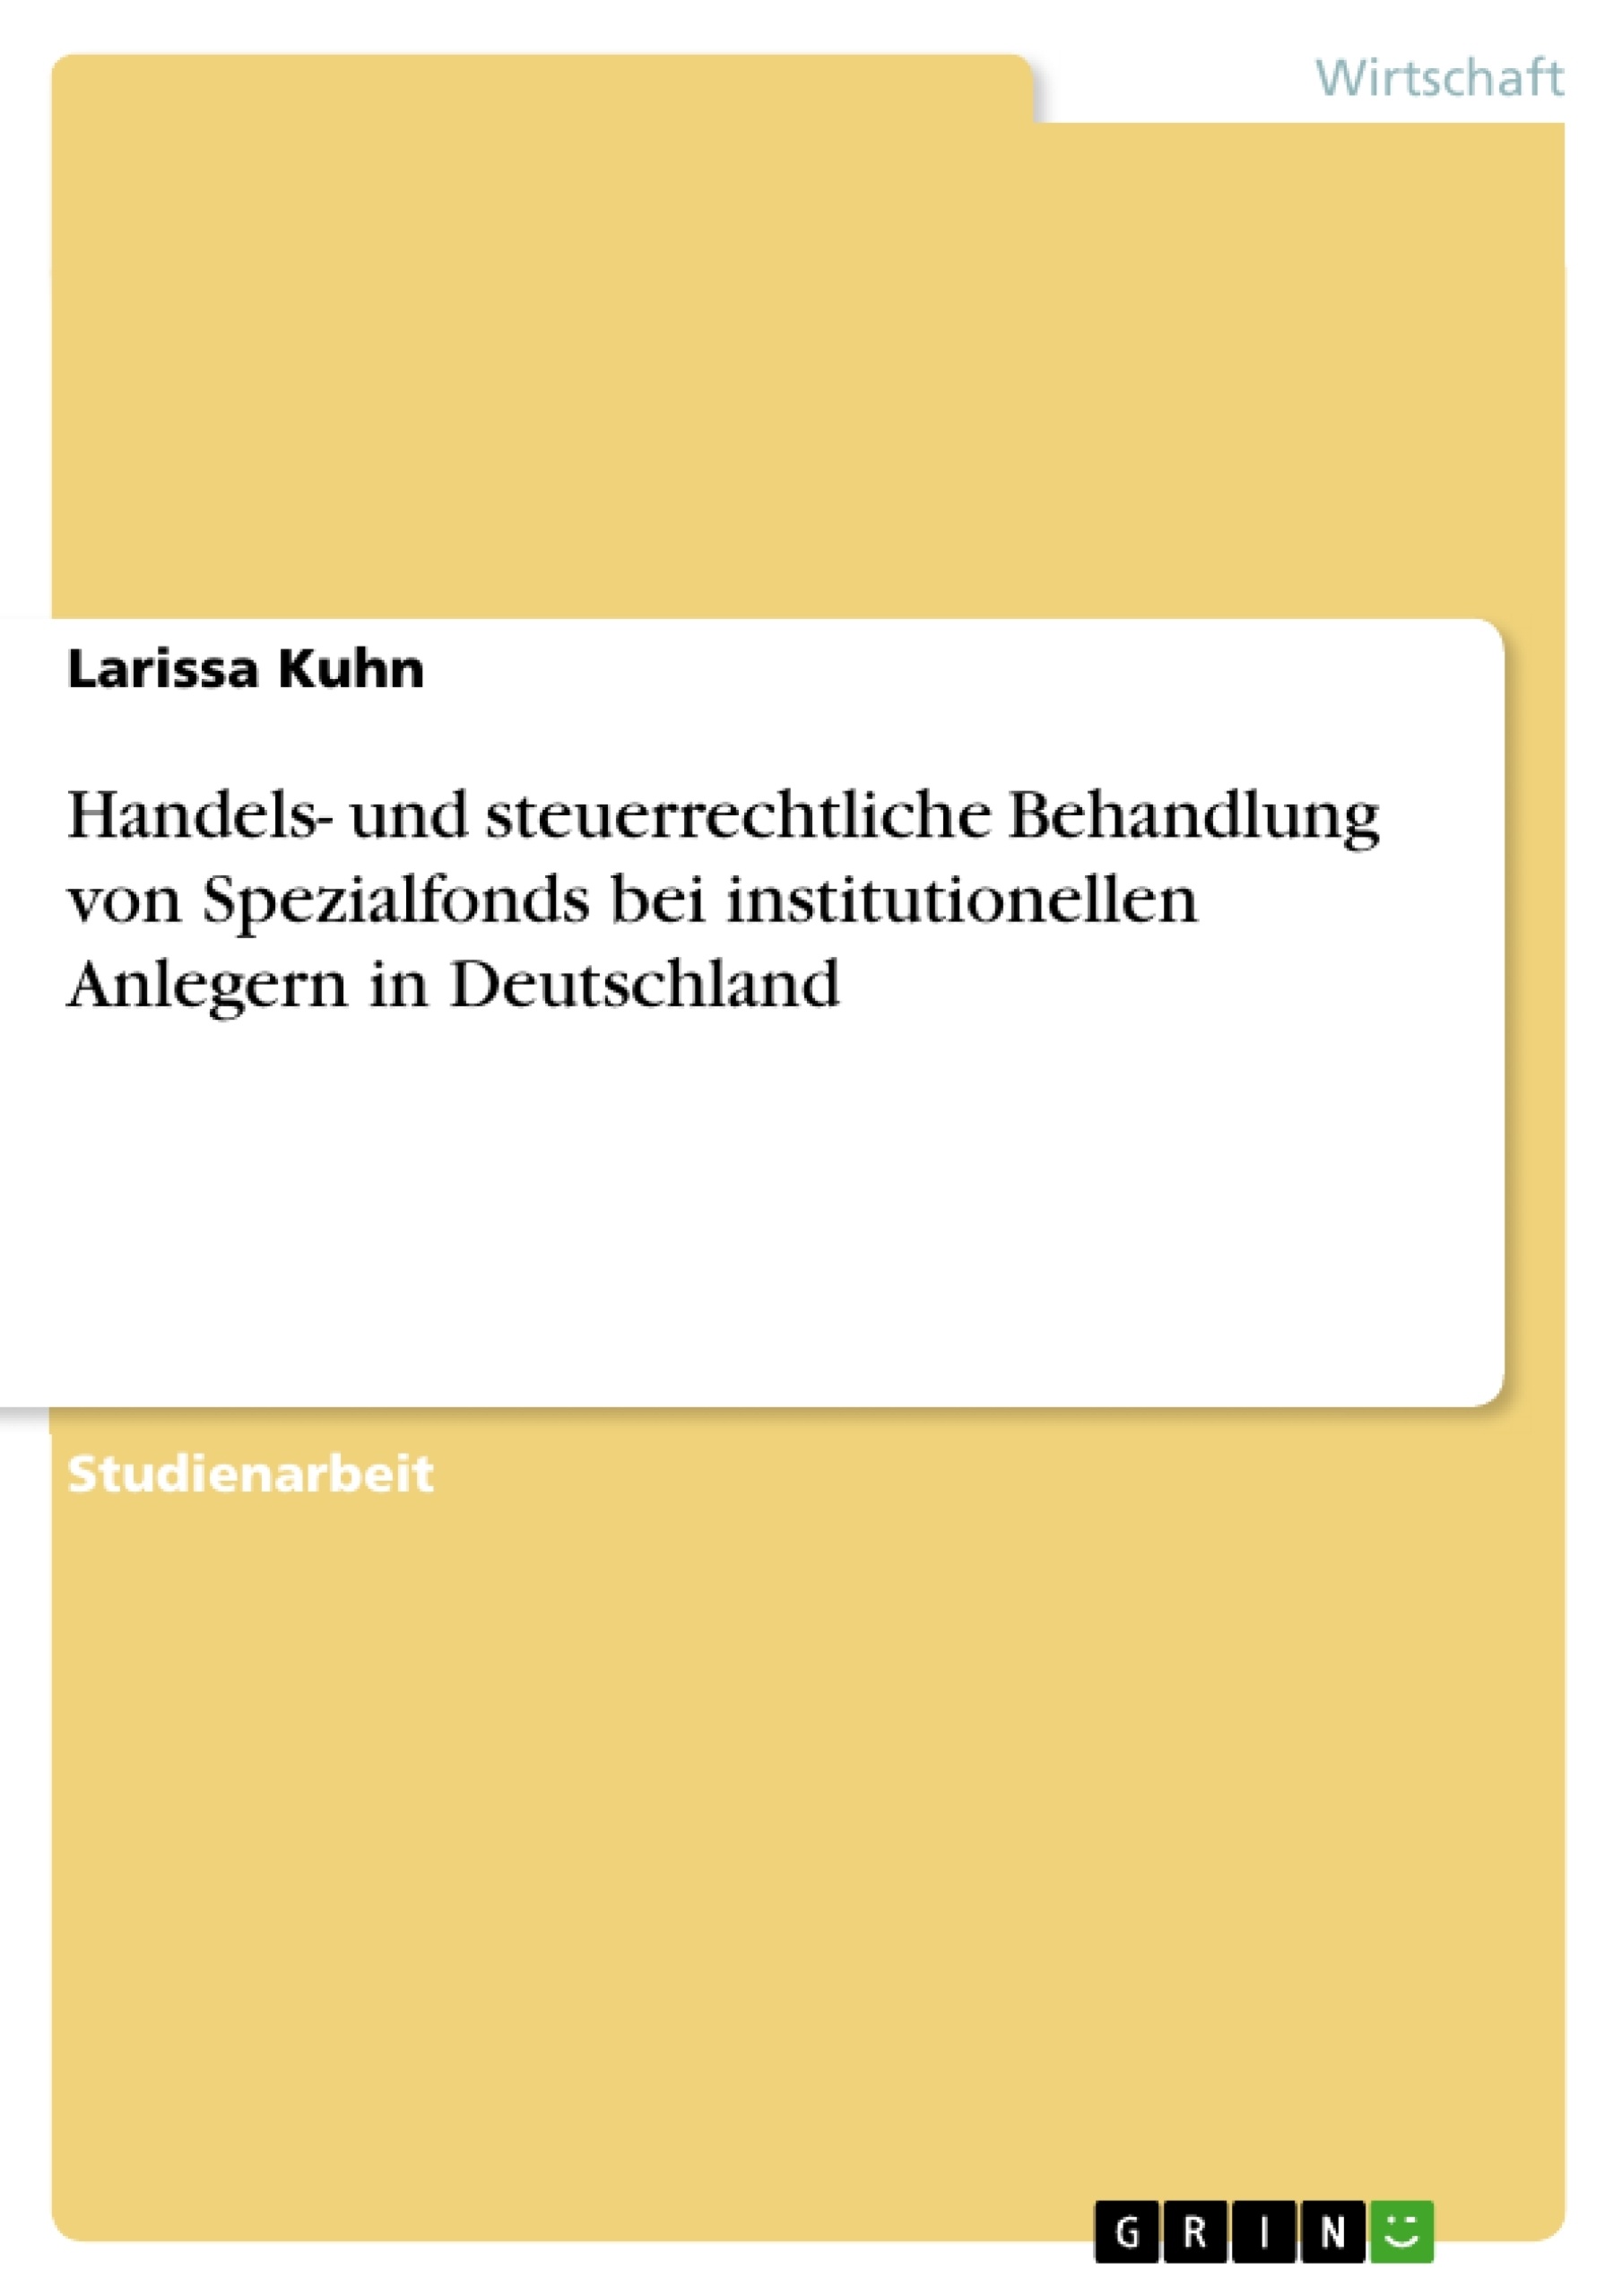 Título: Handels- und steuerrechtliche Behandlung von Spezialfonds bei institutionellen Anlegern in Deutschland